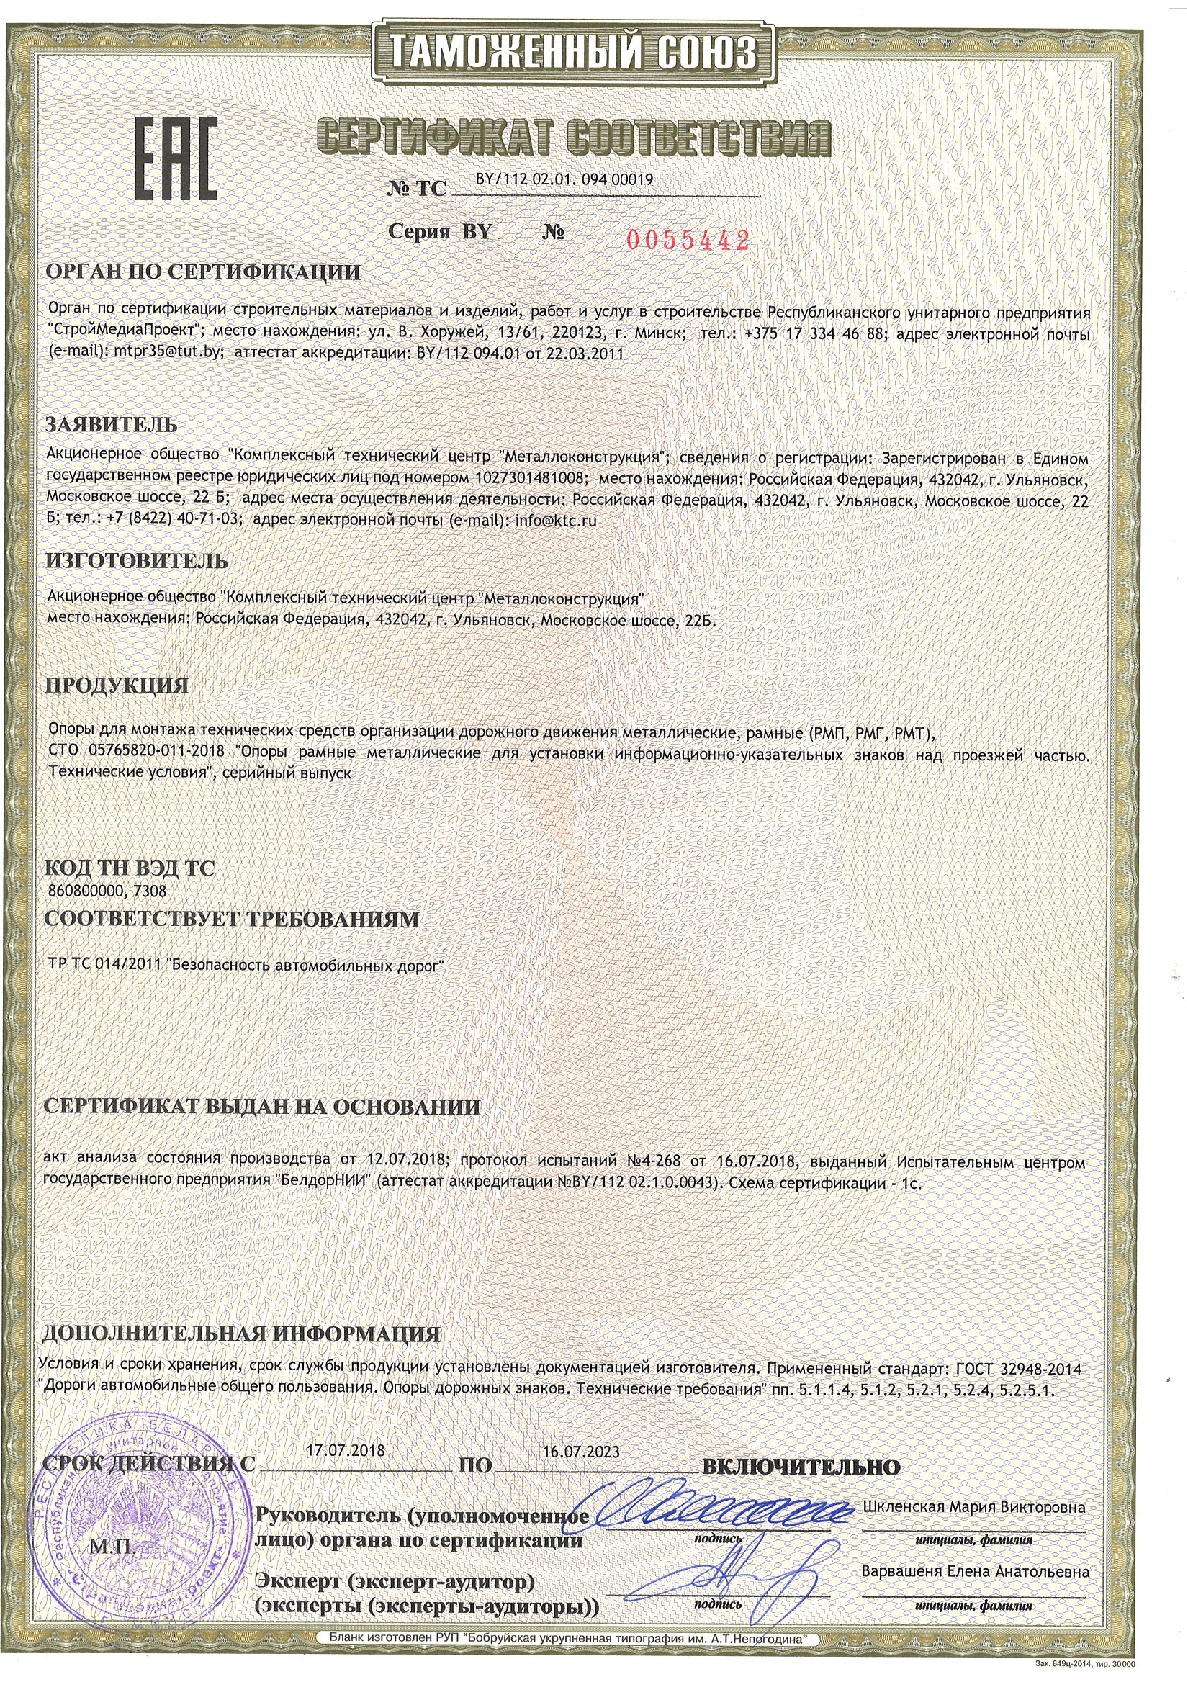 Сертификат соотвествия № BY/112 02.01 09400019, КТЦ Металлоконструкция